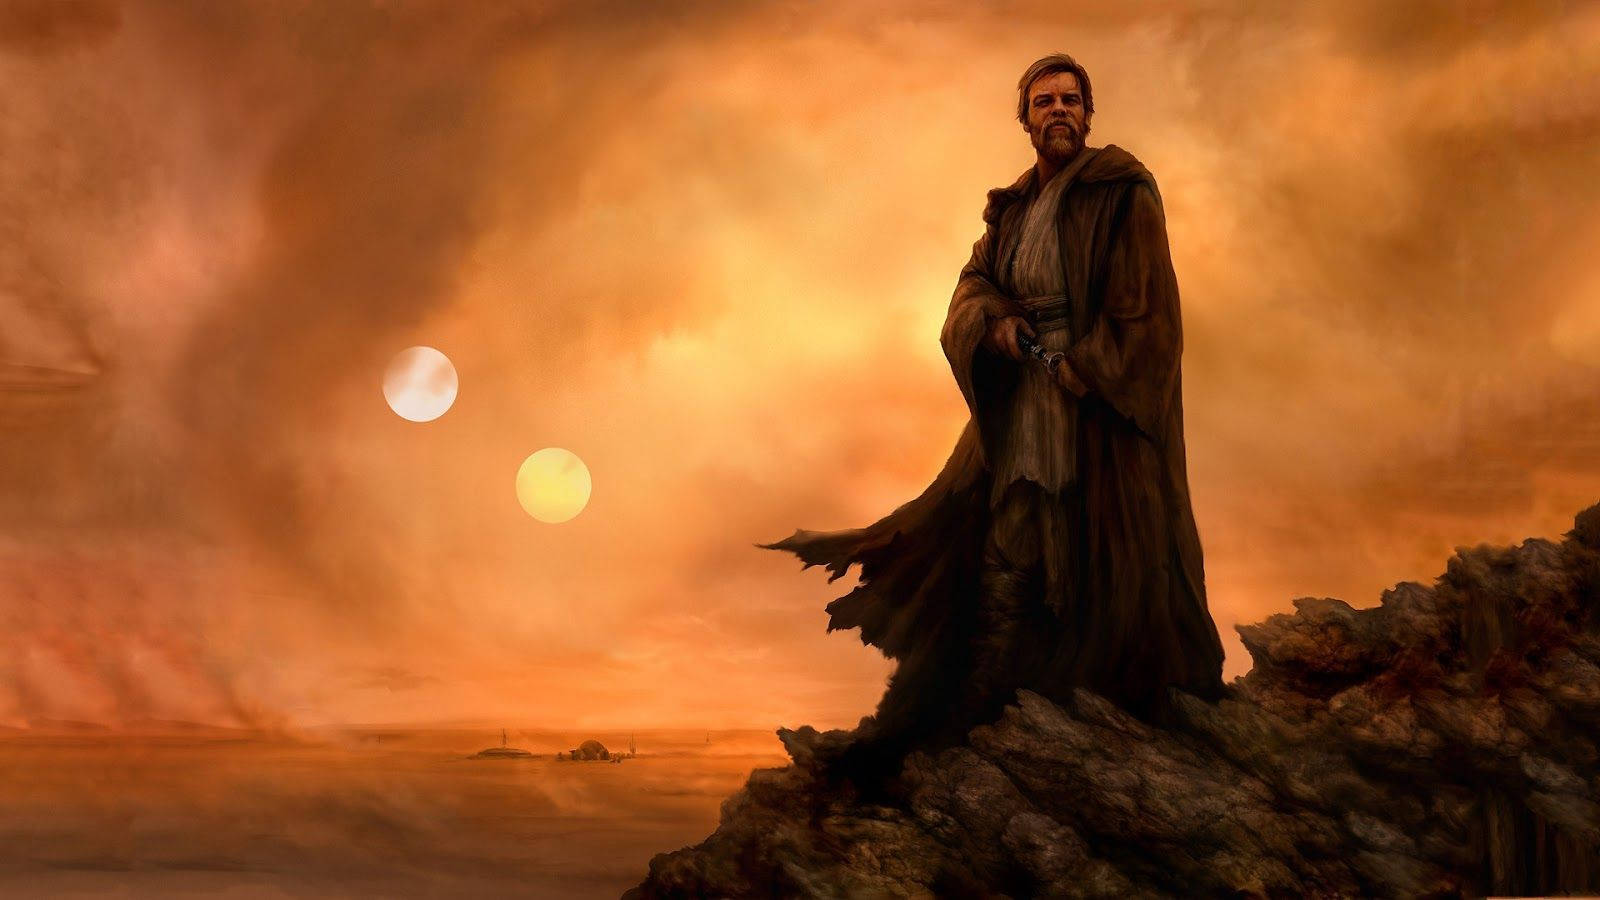 Luke Skywalker of the Star Wars Franchise Wallpaper